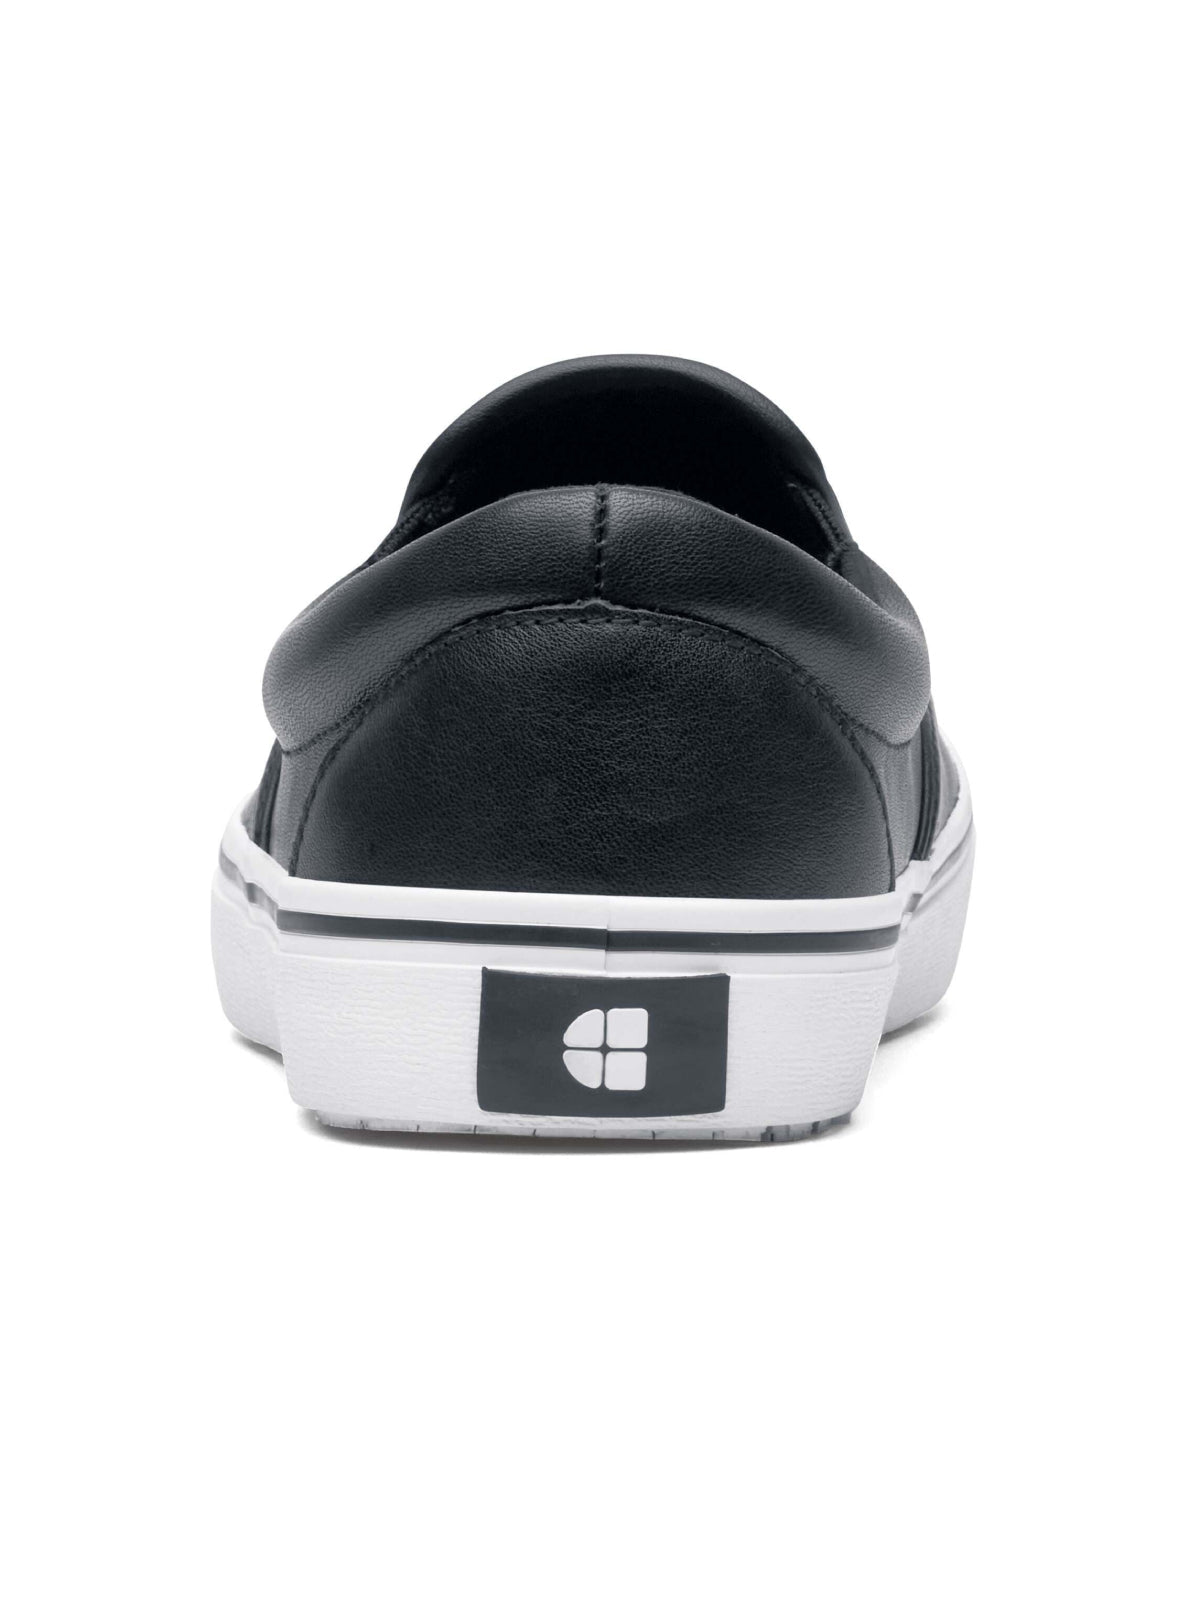 Unisex Work Shoe Merlin Black & White